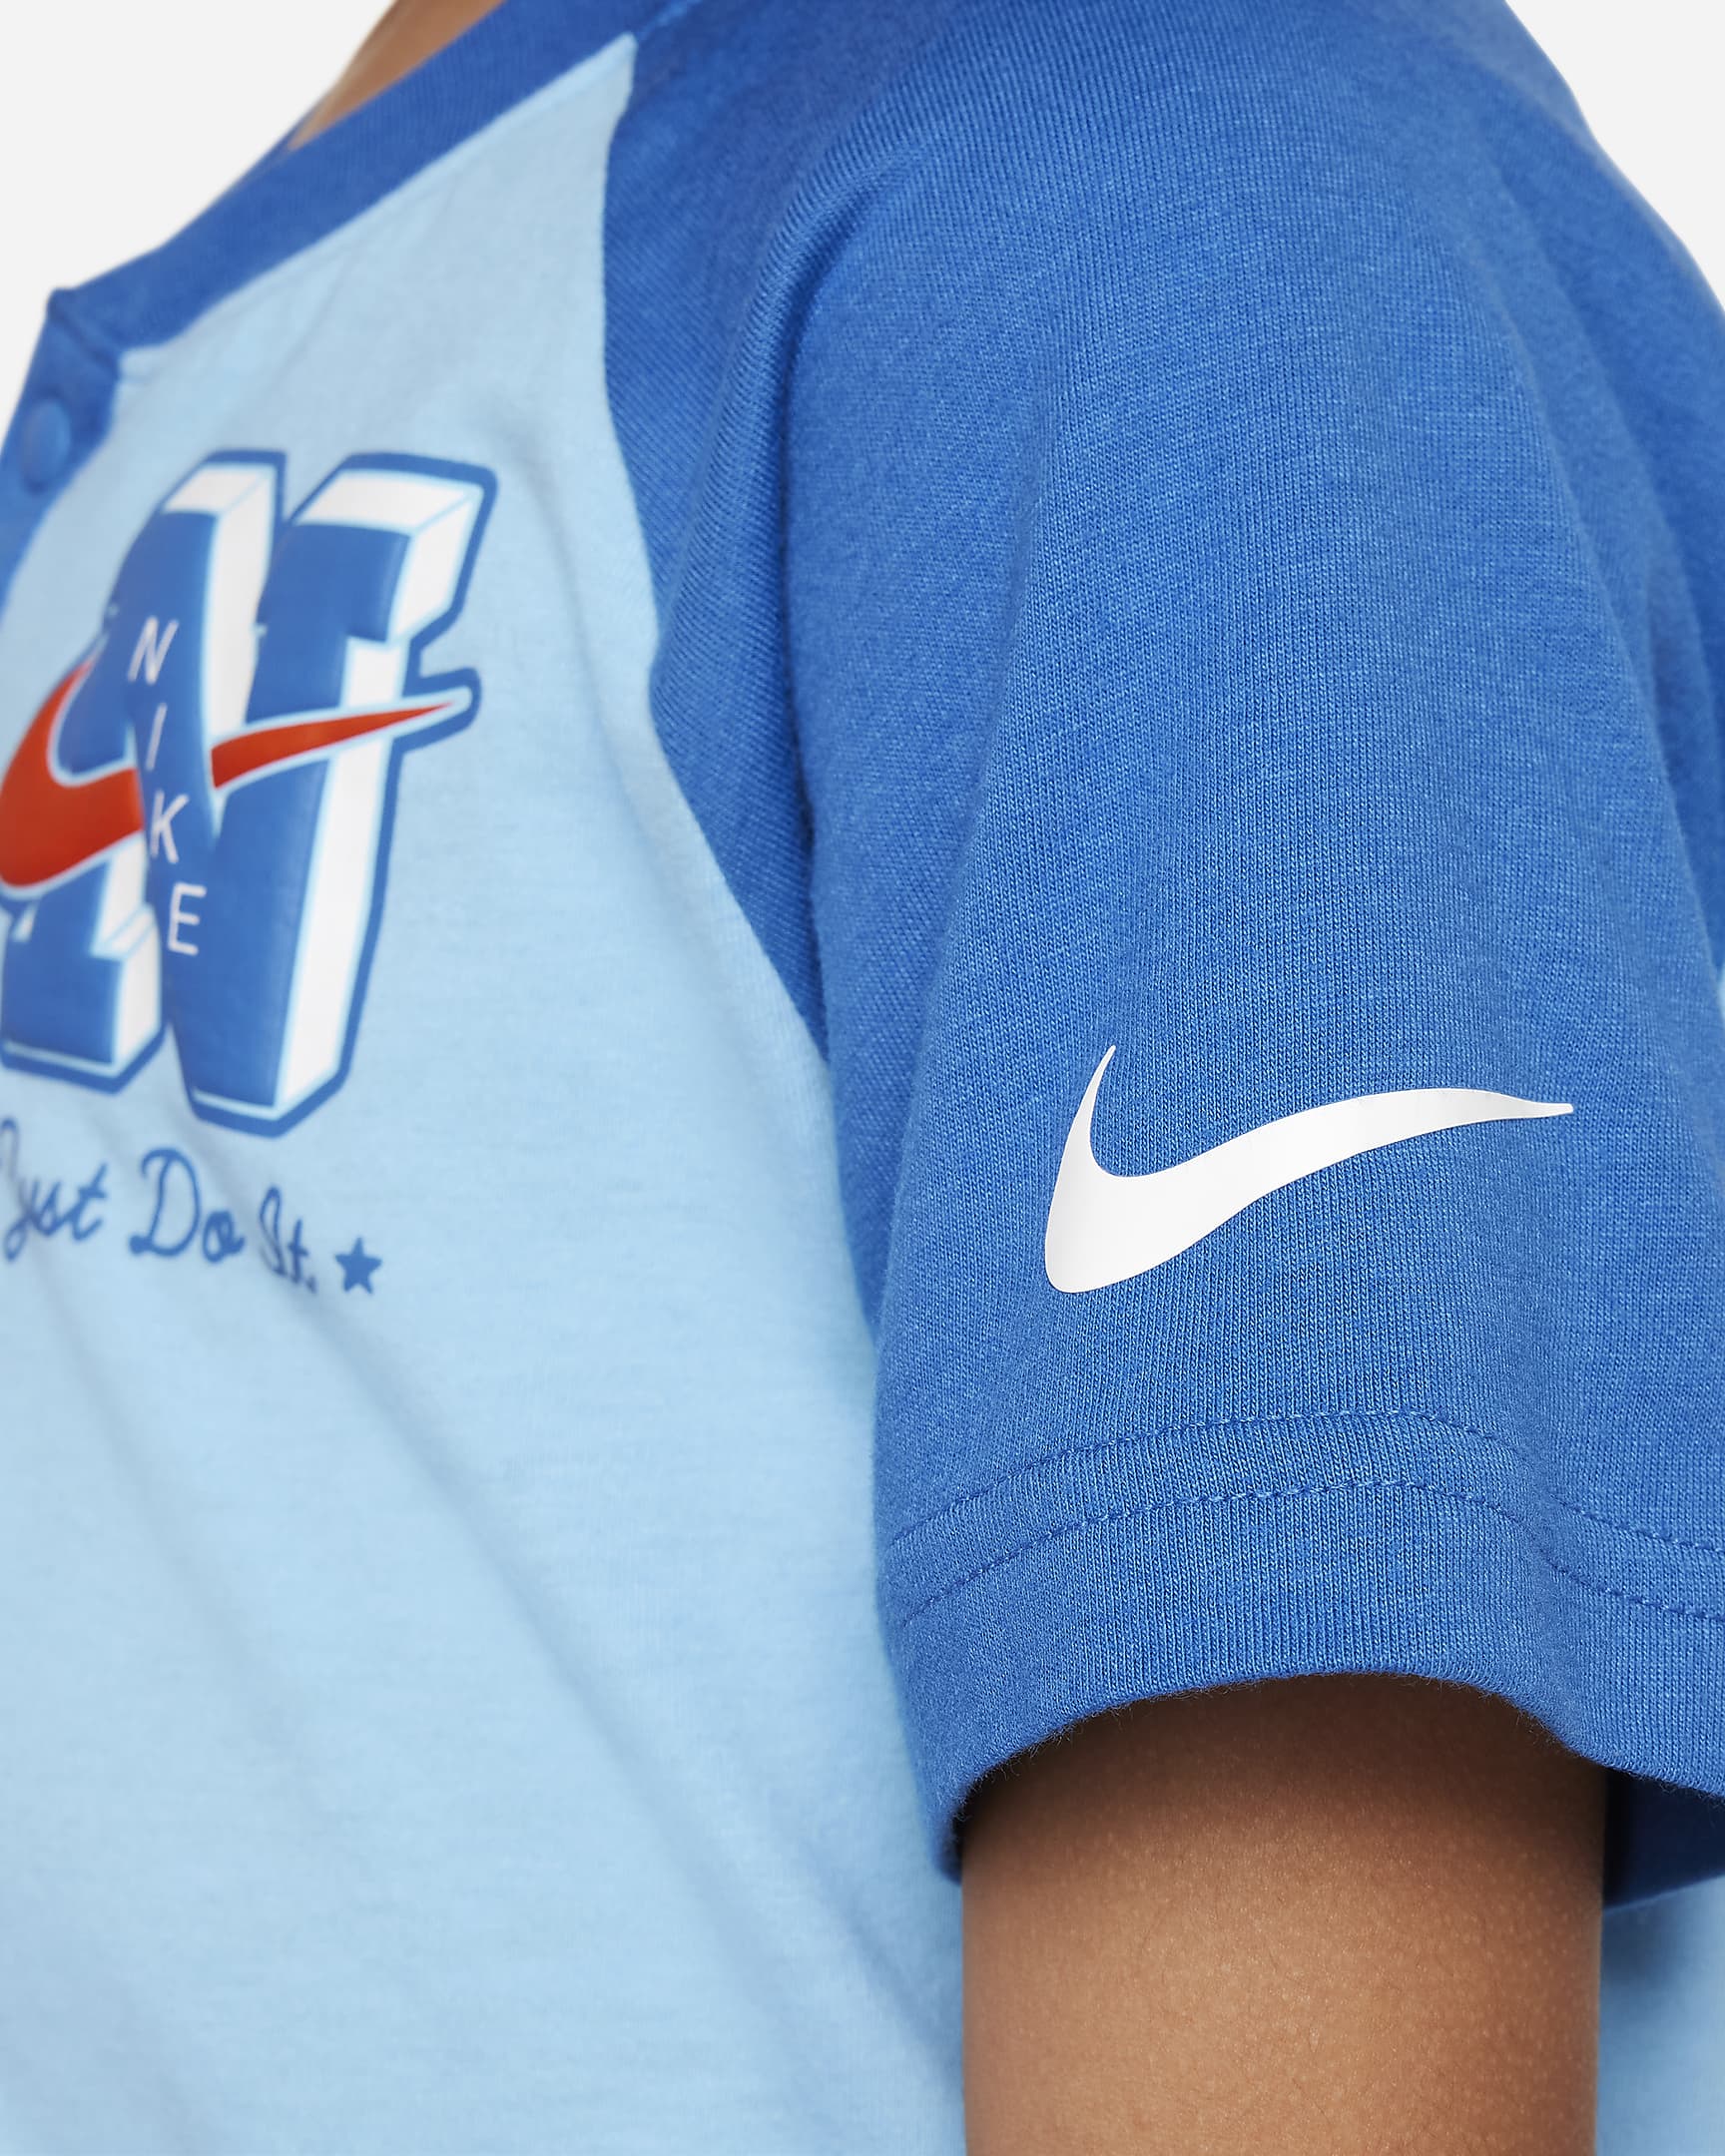 Nike Sportswear Next Gen Little Kids' 2-Piece Shorts Set. Nike.com